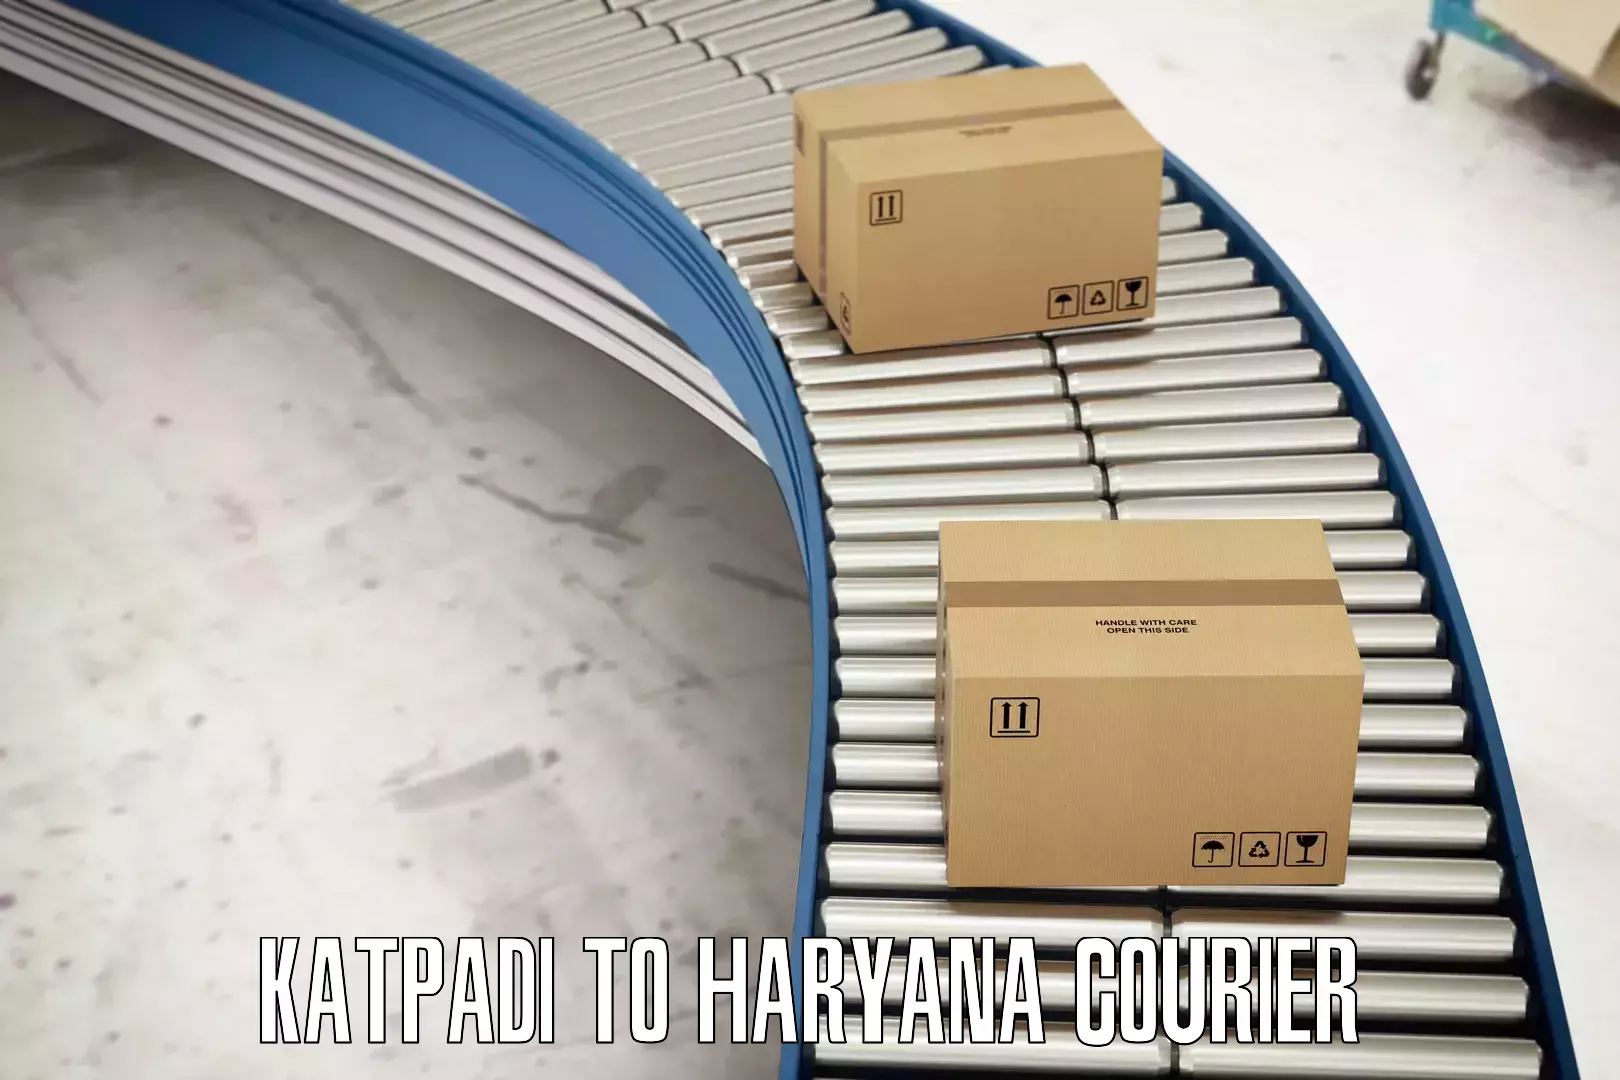 Advanced shipping technology Katpadi to Narwana